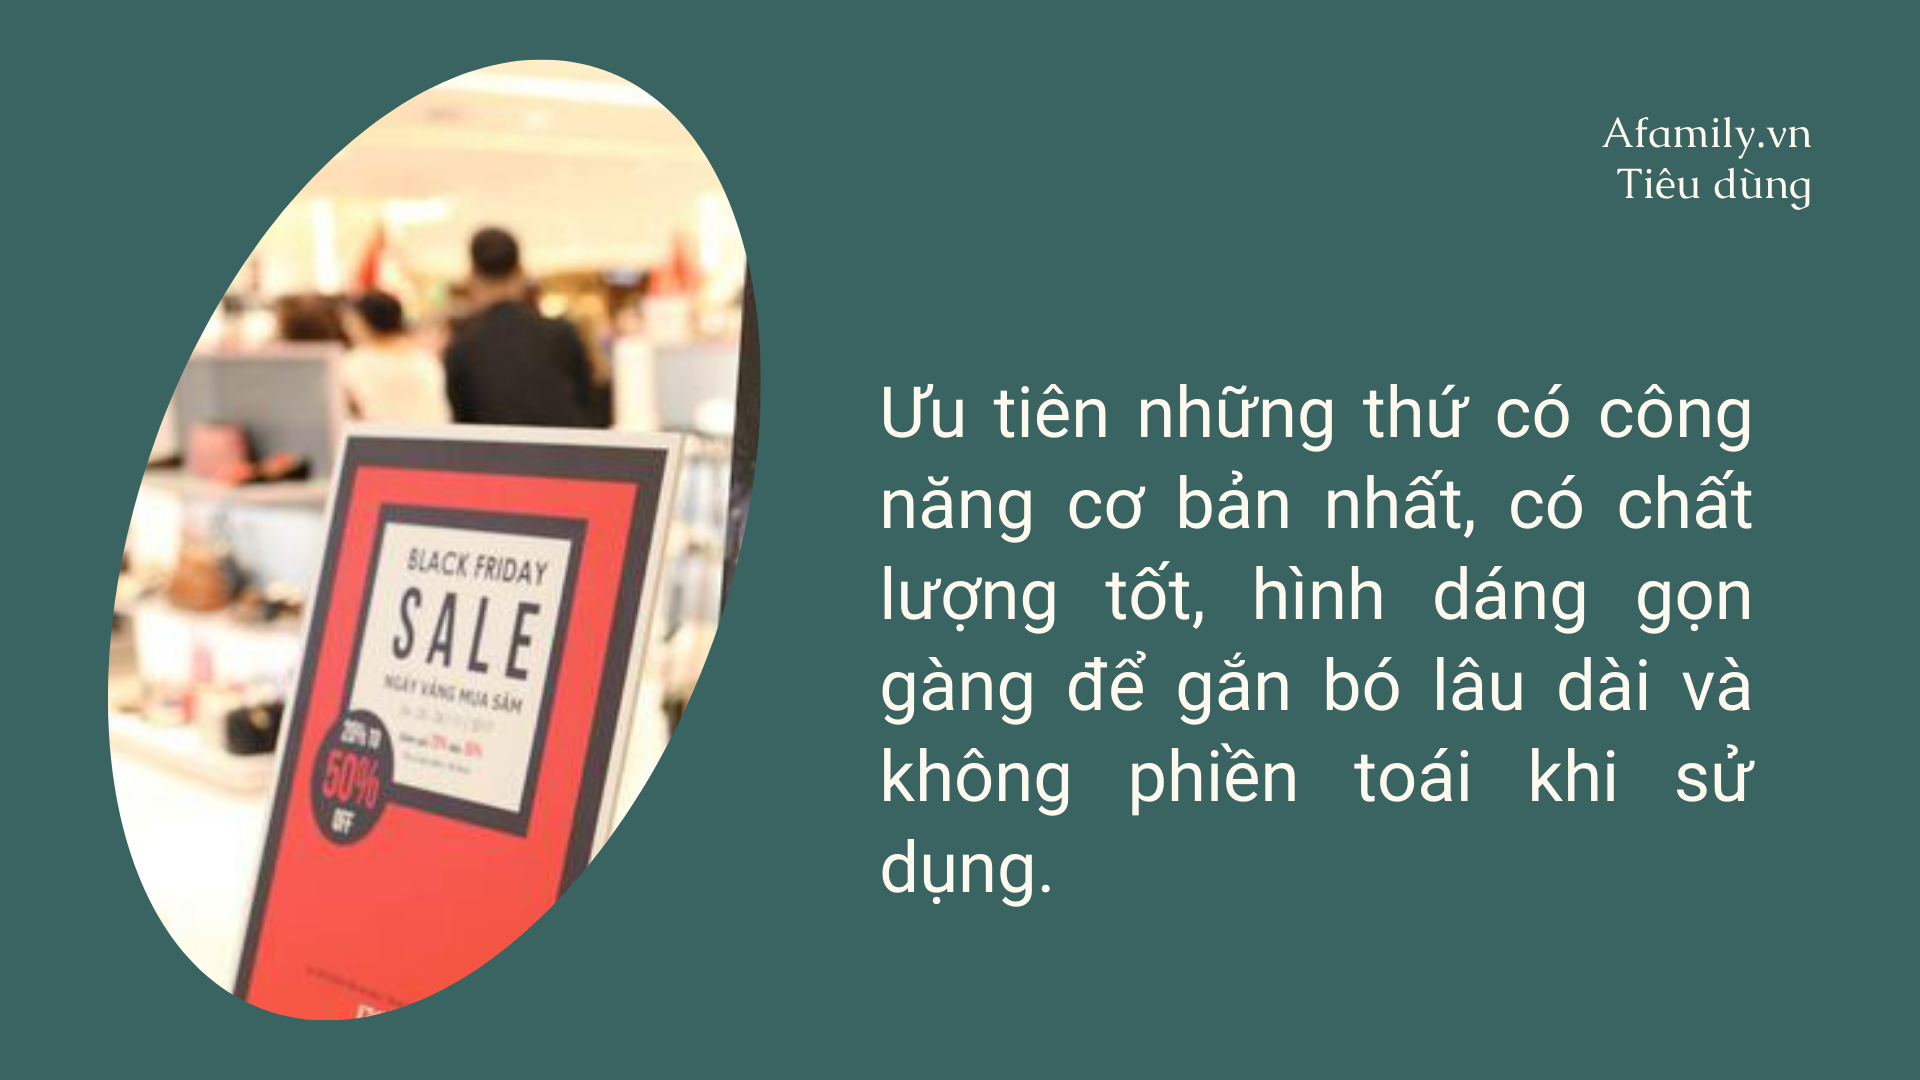 Black Friday: Mẹ đảm Hà Nội chia sẻ kinh nghiệm không bị cuốn vào cơn sốt mua sắm, tốn tiền mua thứ không thực sự cần - Ảnh 2.